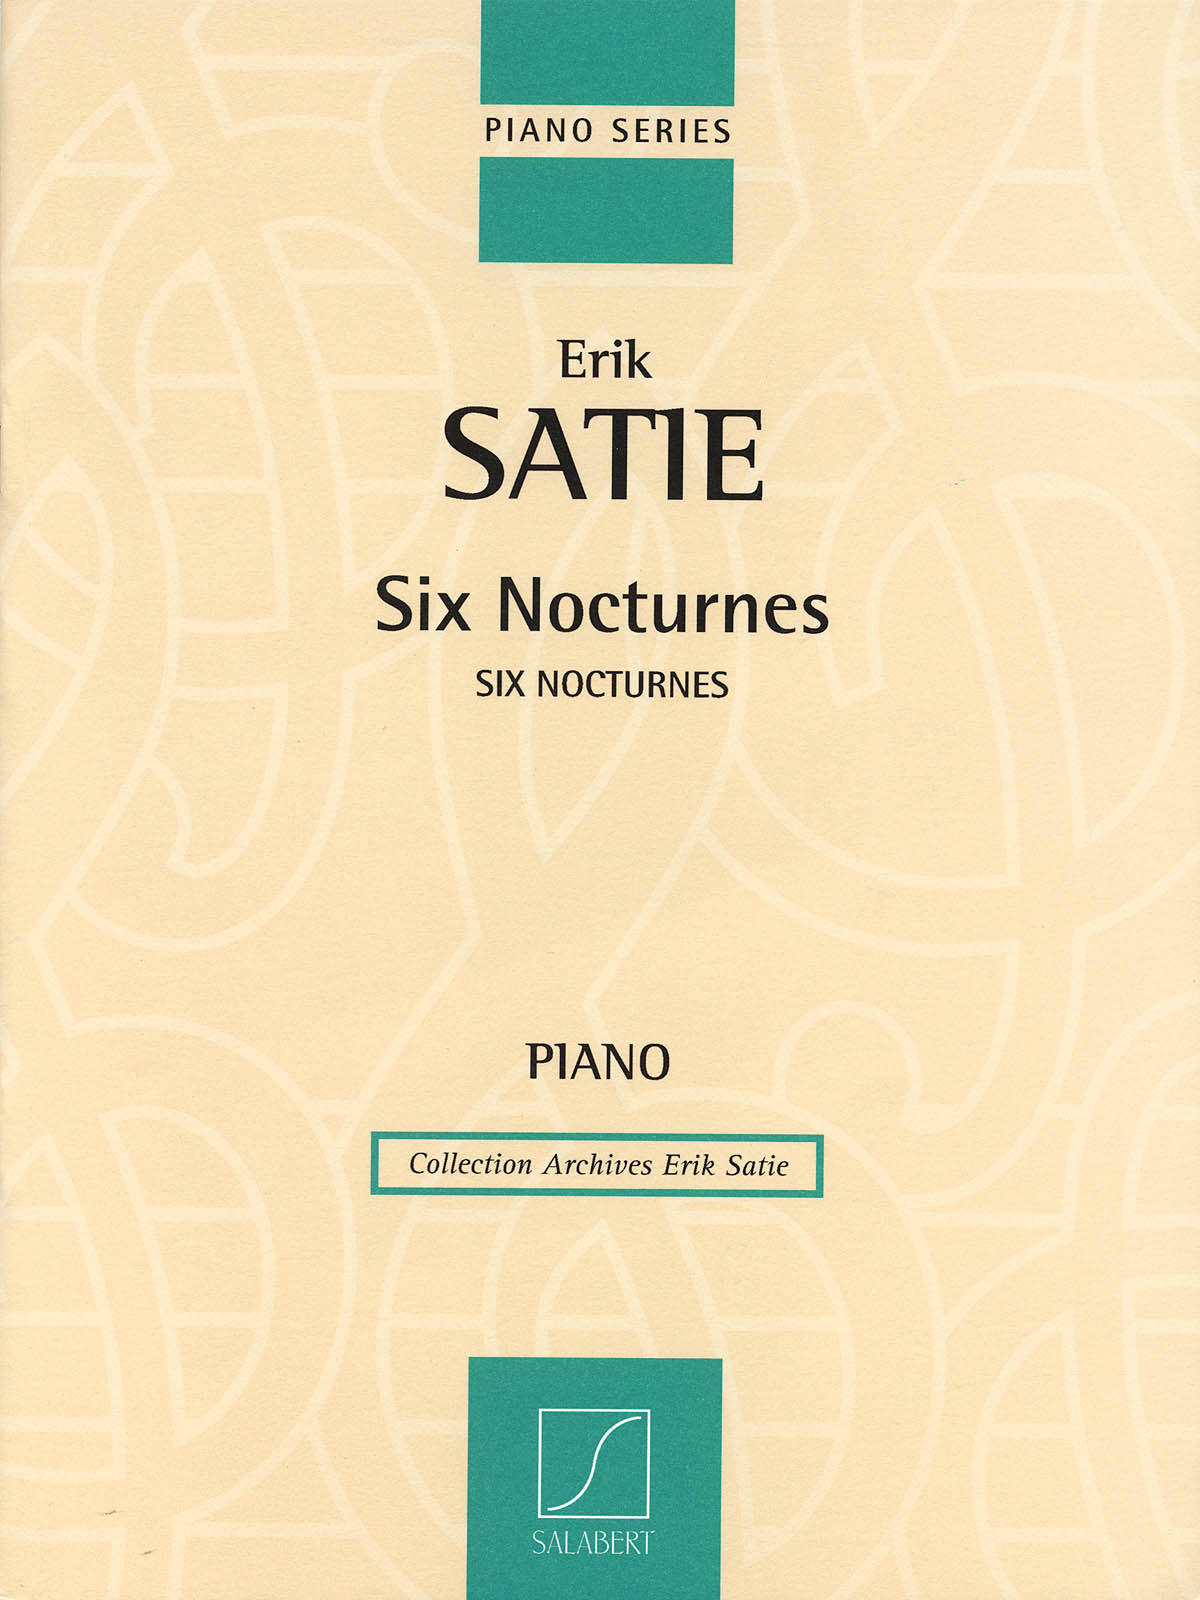 Satie: 6 Nocturnes